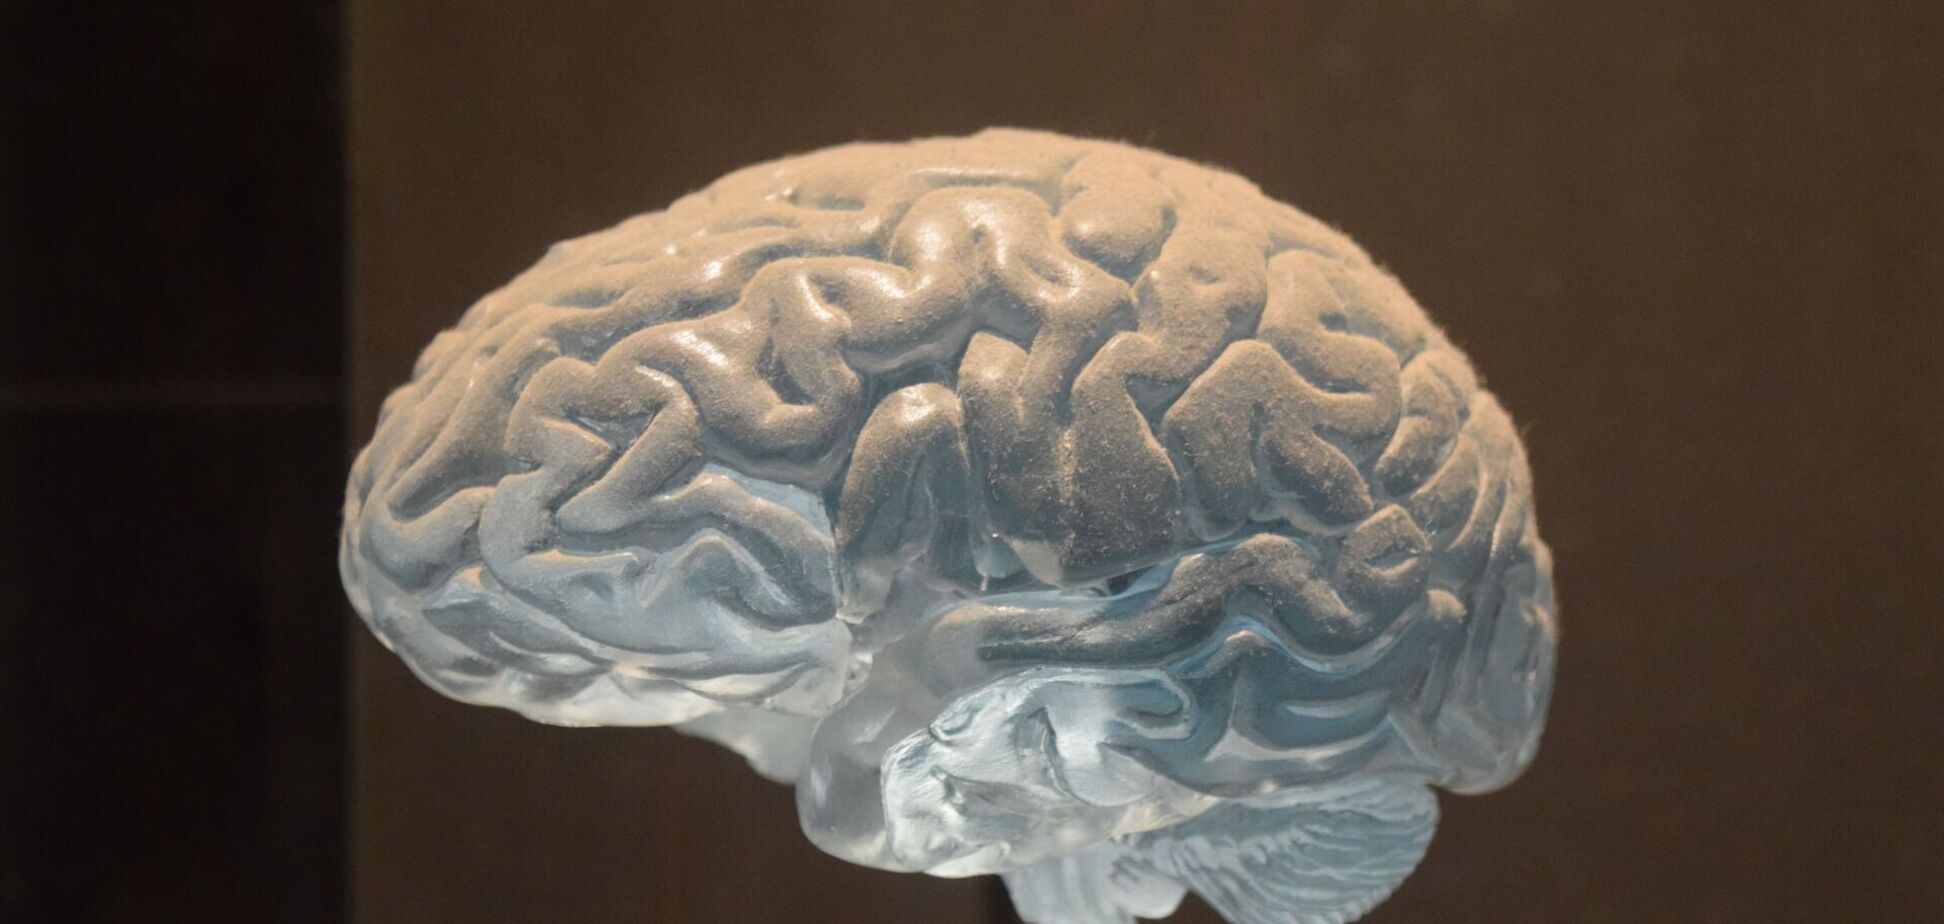 Ученые исследовали пациентов с неврологическими расстройствами